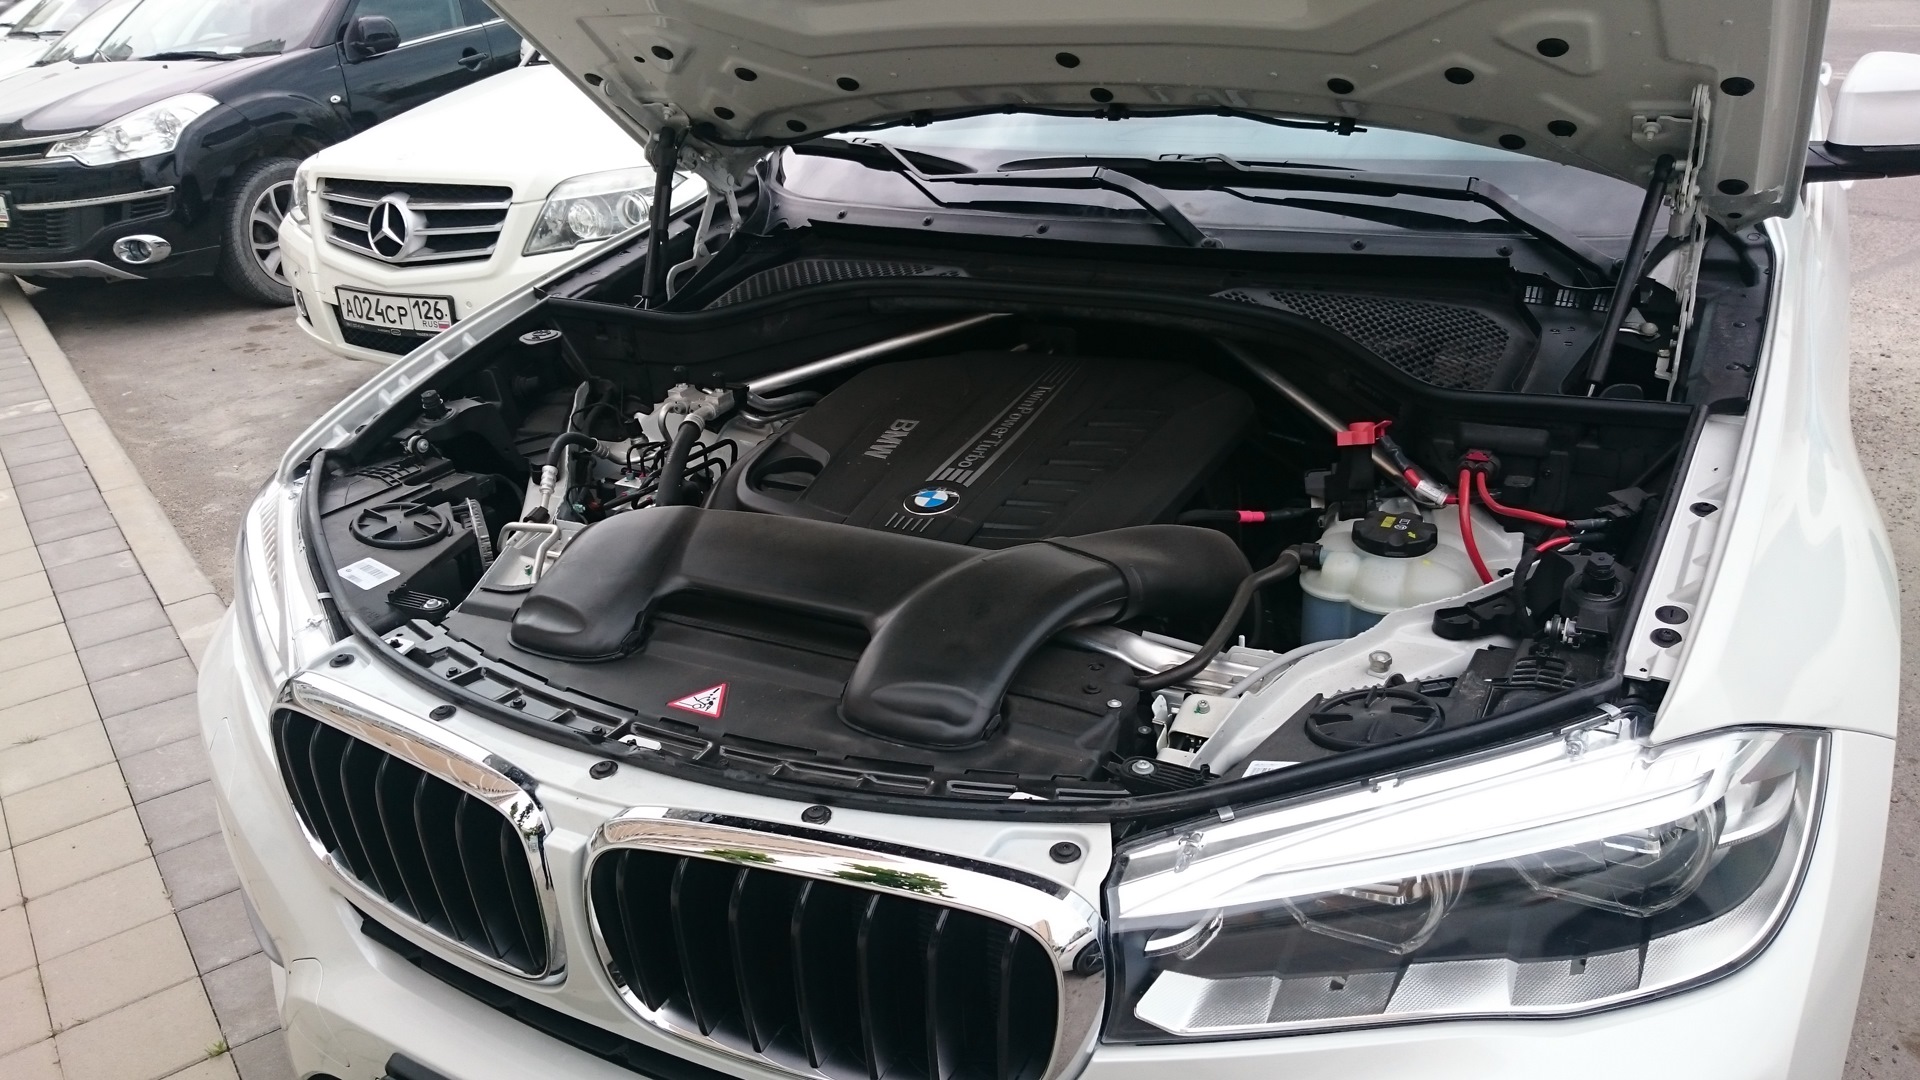 Капот x5. BMW x6 f мотор. BMW x6 f16 под капотом. Подкапотное пространство BMW x6 f16. BMW x5 g05 под капотом.